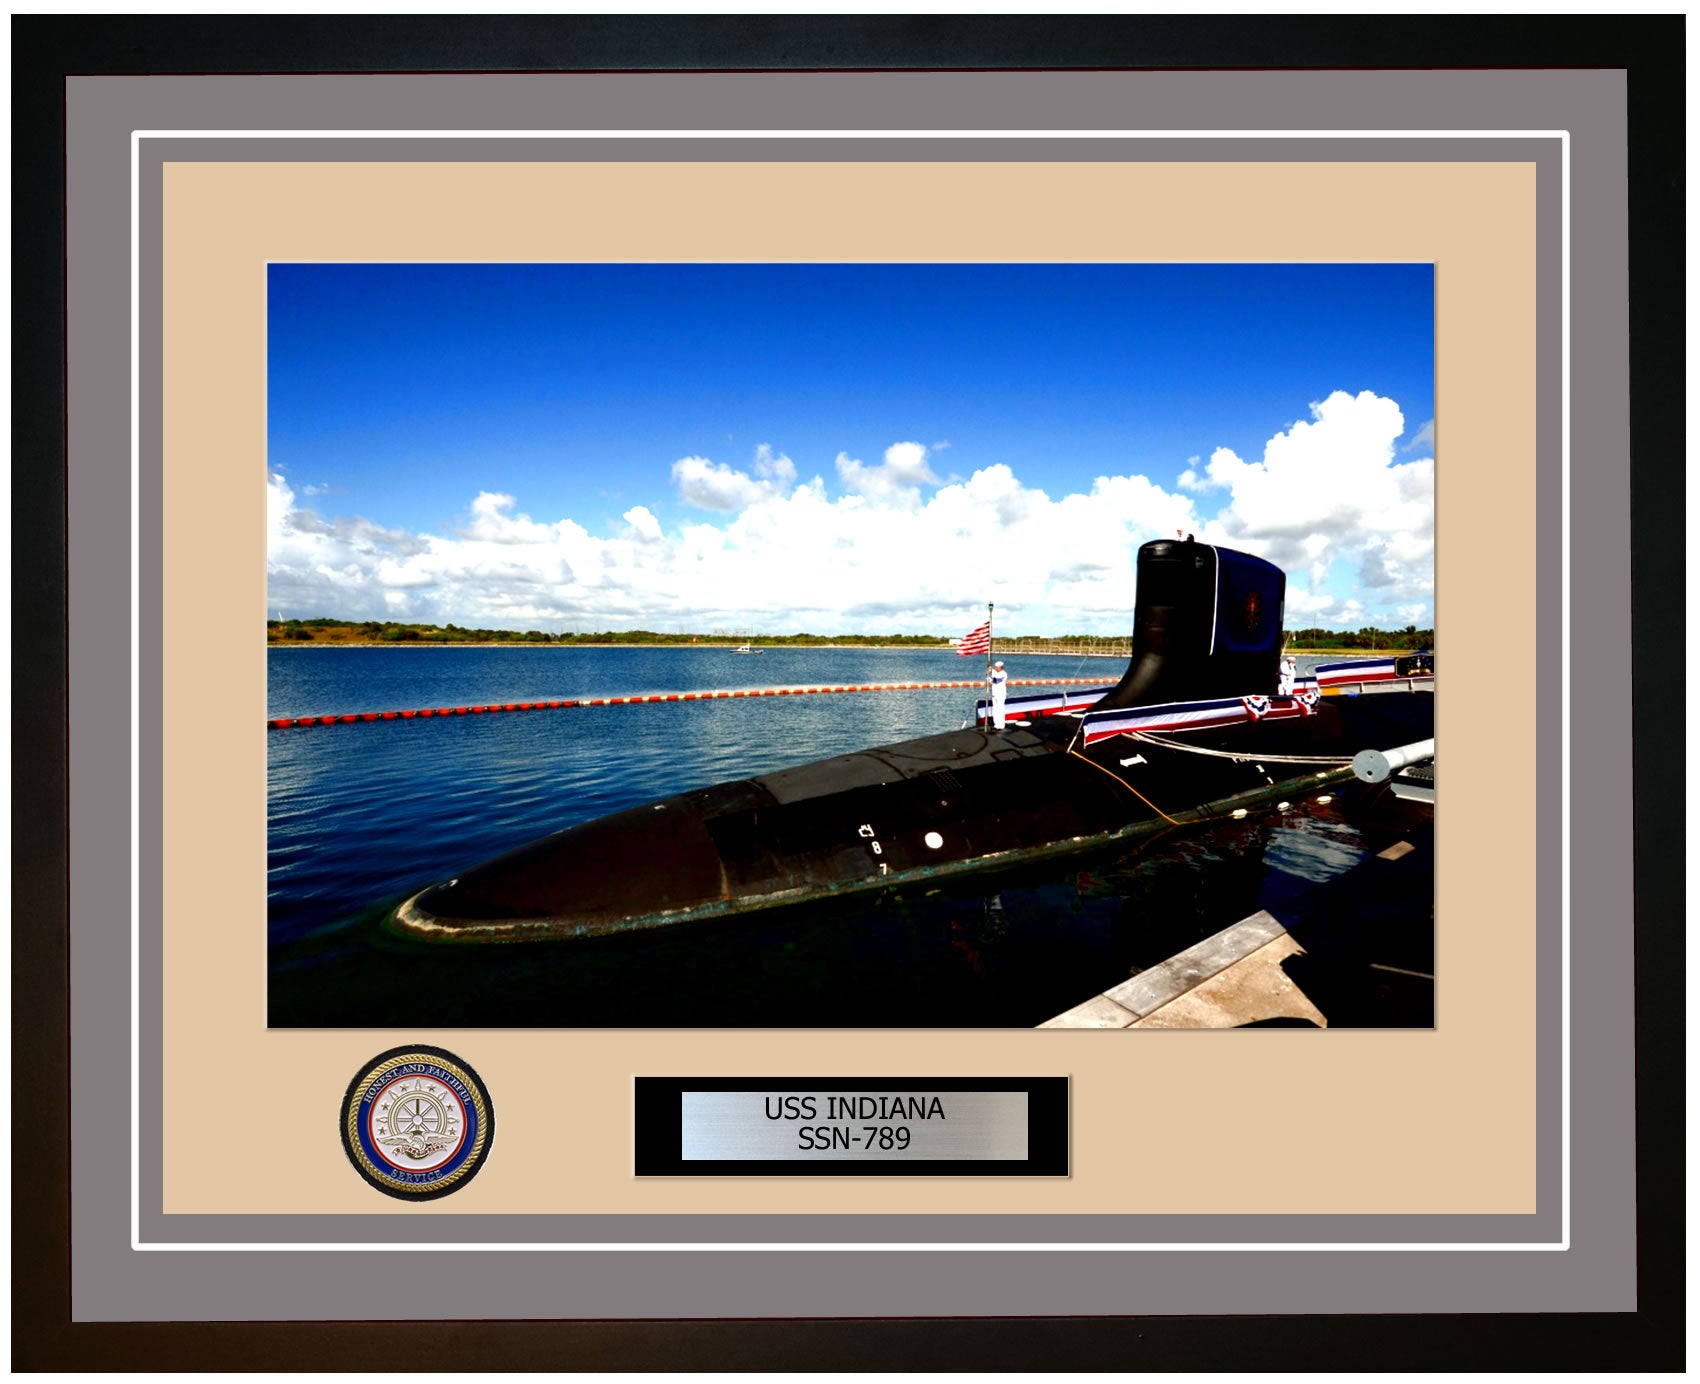 USS Indiana SSN-789 Framed Navy Ship Photo Grey